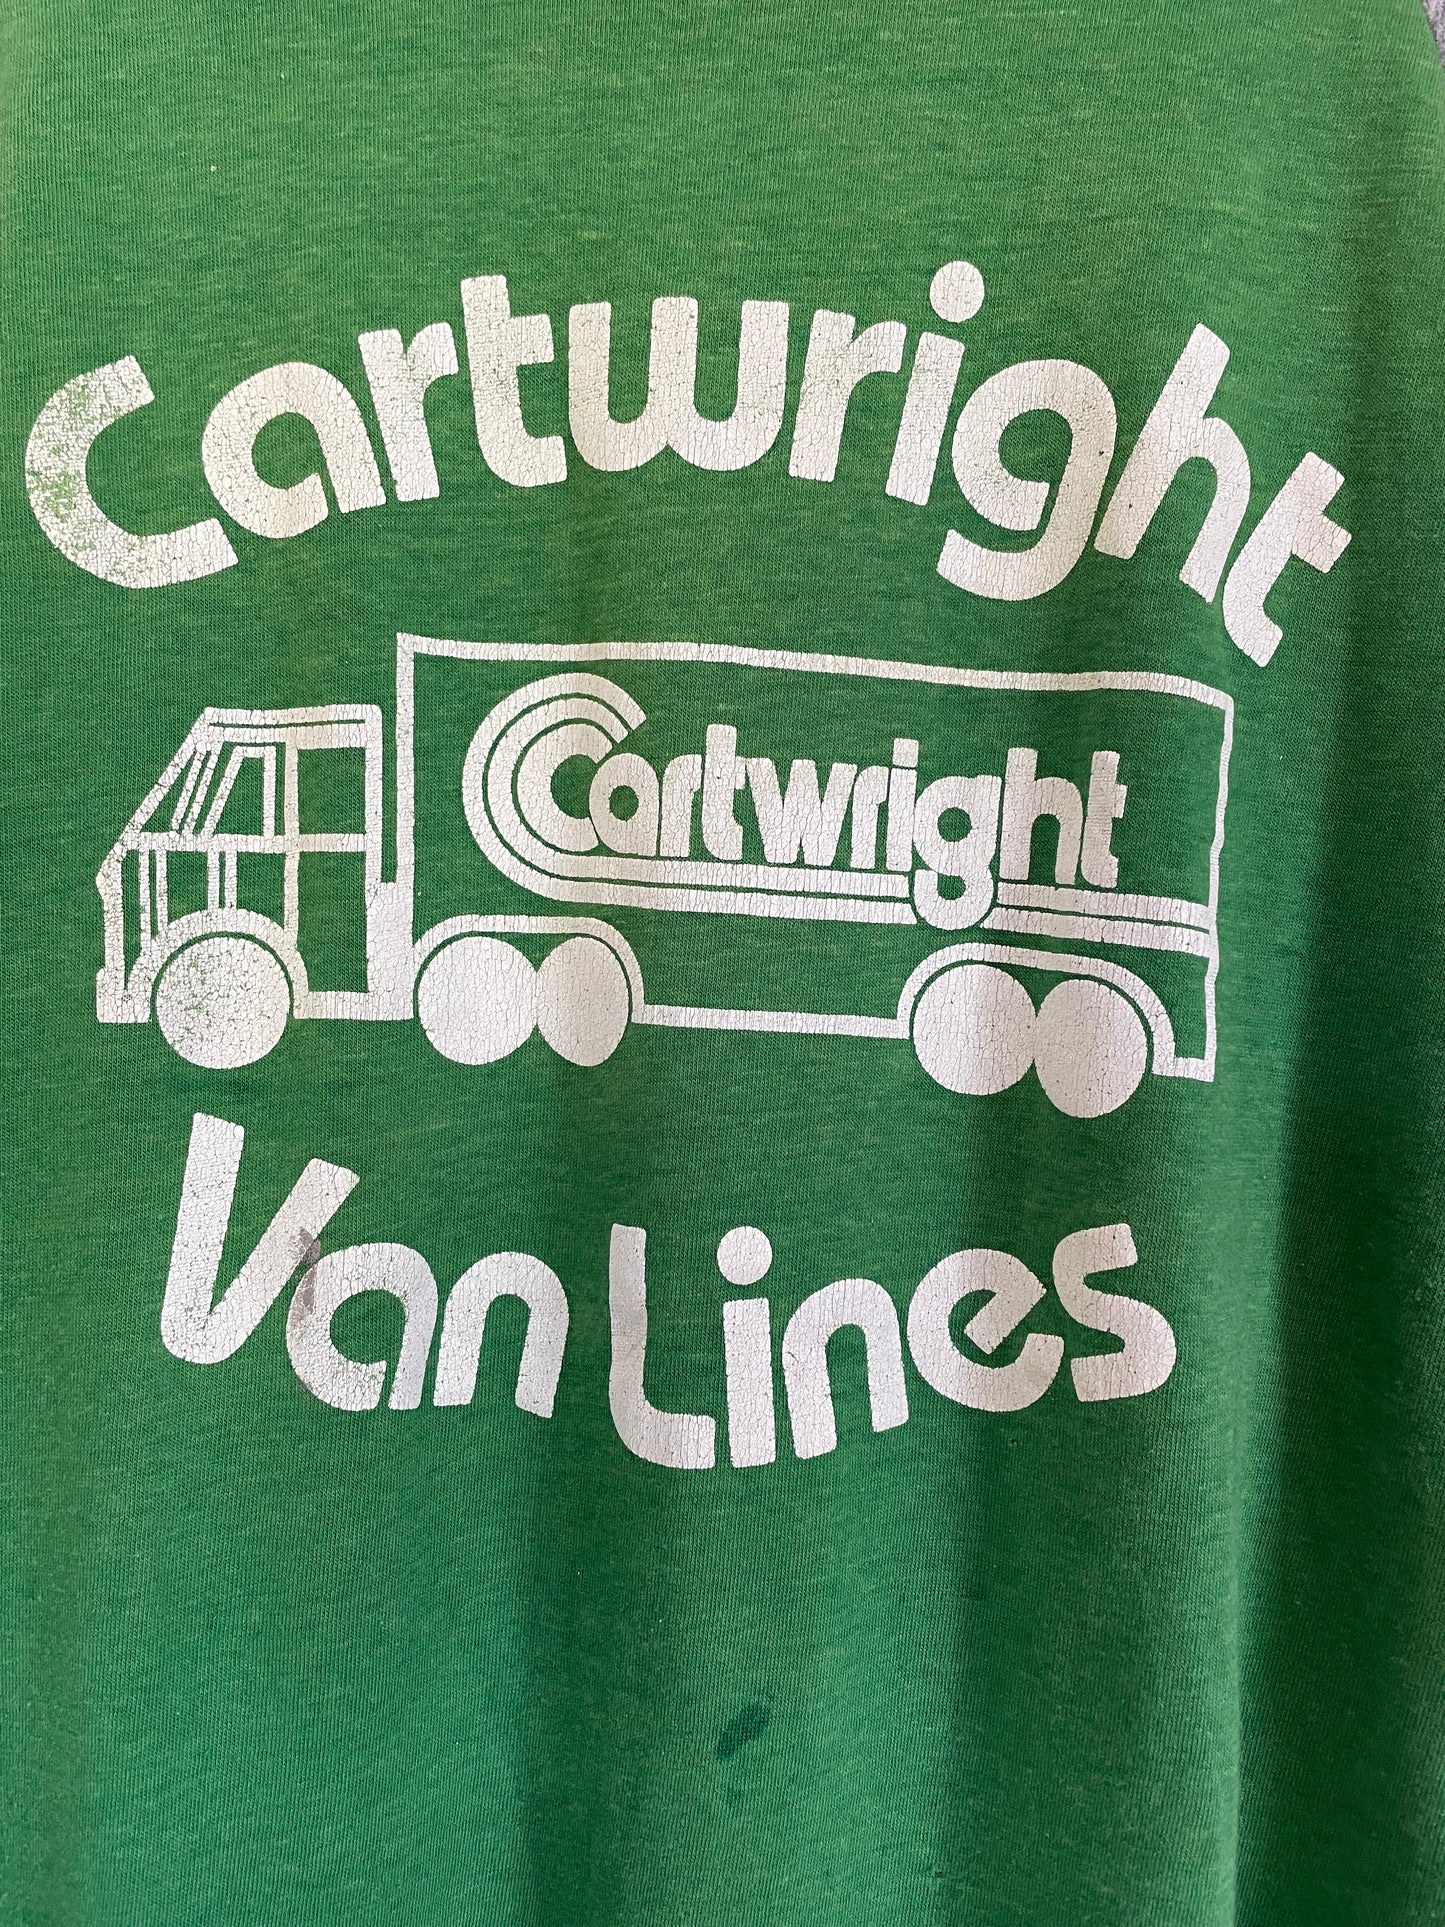 80s Cartwright Van Lines Tee